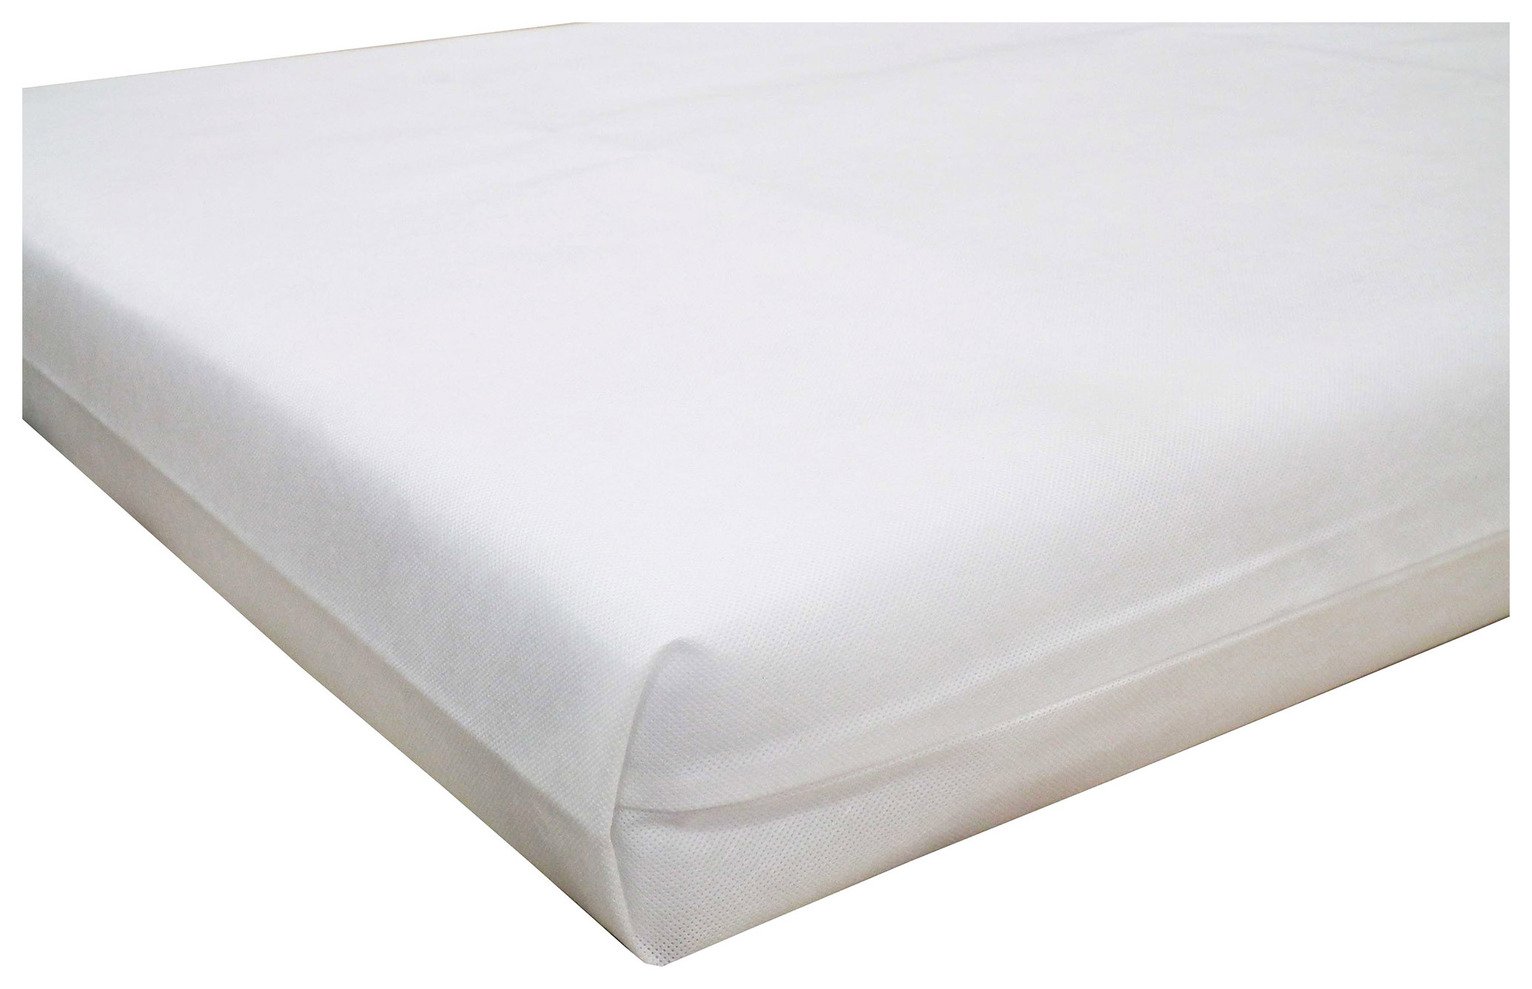 cuggl travel cot bed mattress